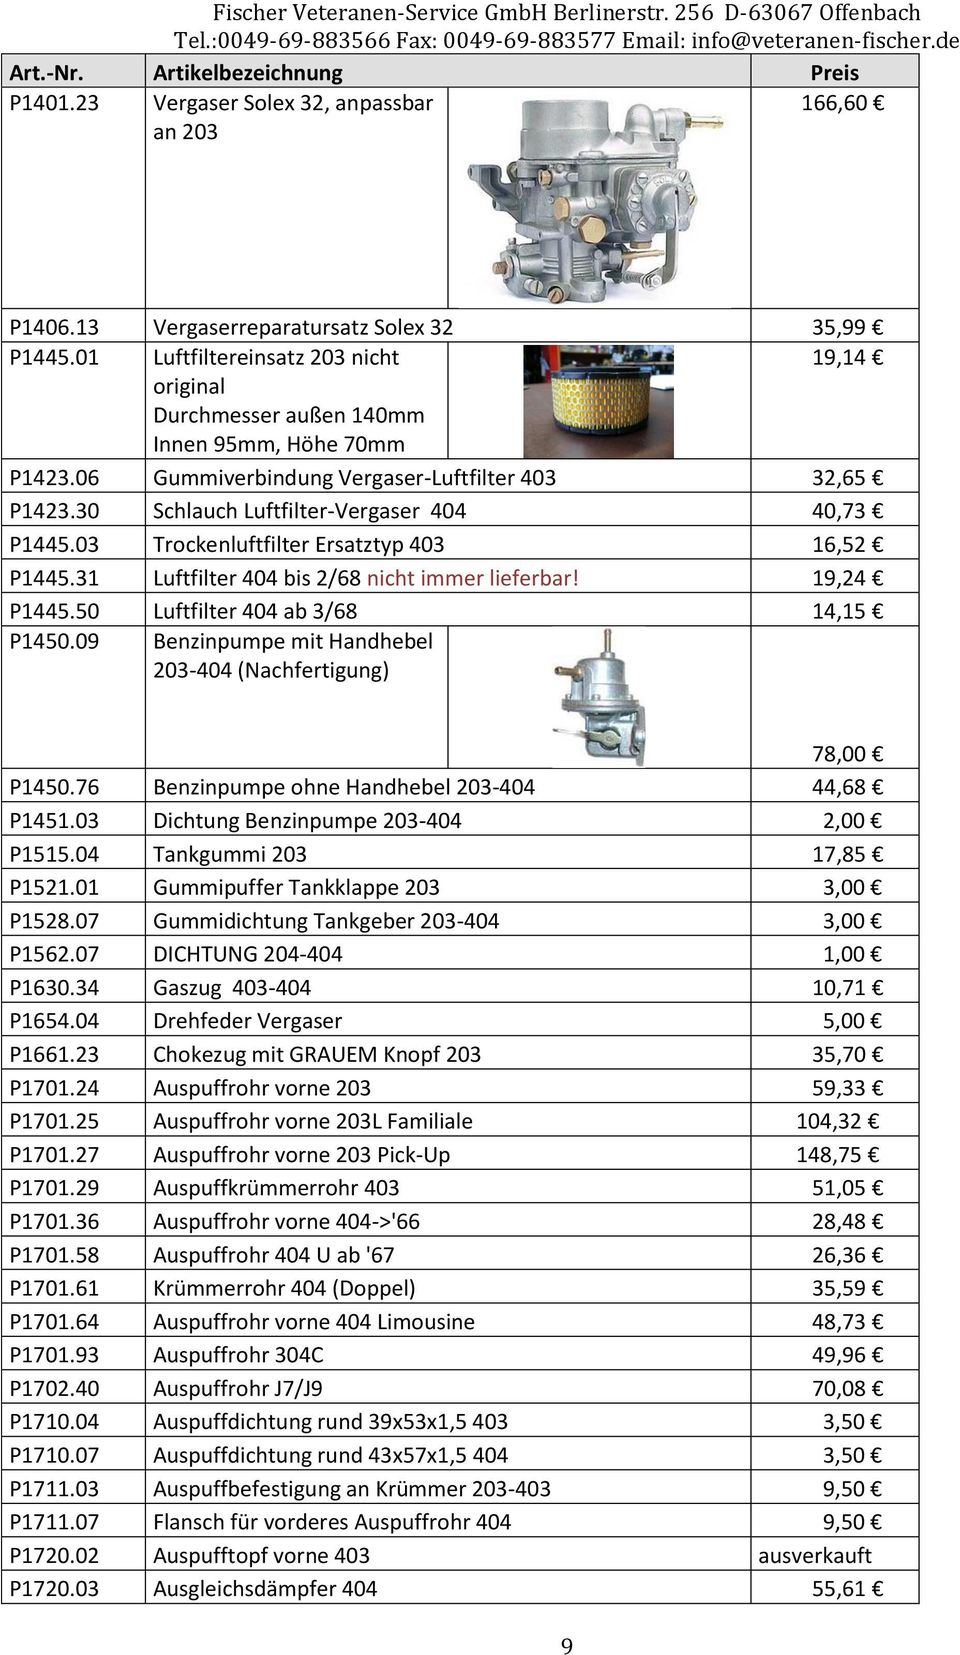 30 Schlauch Luftfilter-Vergaser 404 40,73 P1445.03 Trockenluftfilter Ersatztyp 403 16,52 P1445.31 Luftfilter 404 bis 2/68 nicht immer lieferbar! 19,24 P1445.50 Luftfilter 404 ab 3/68 14,15 P1450.